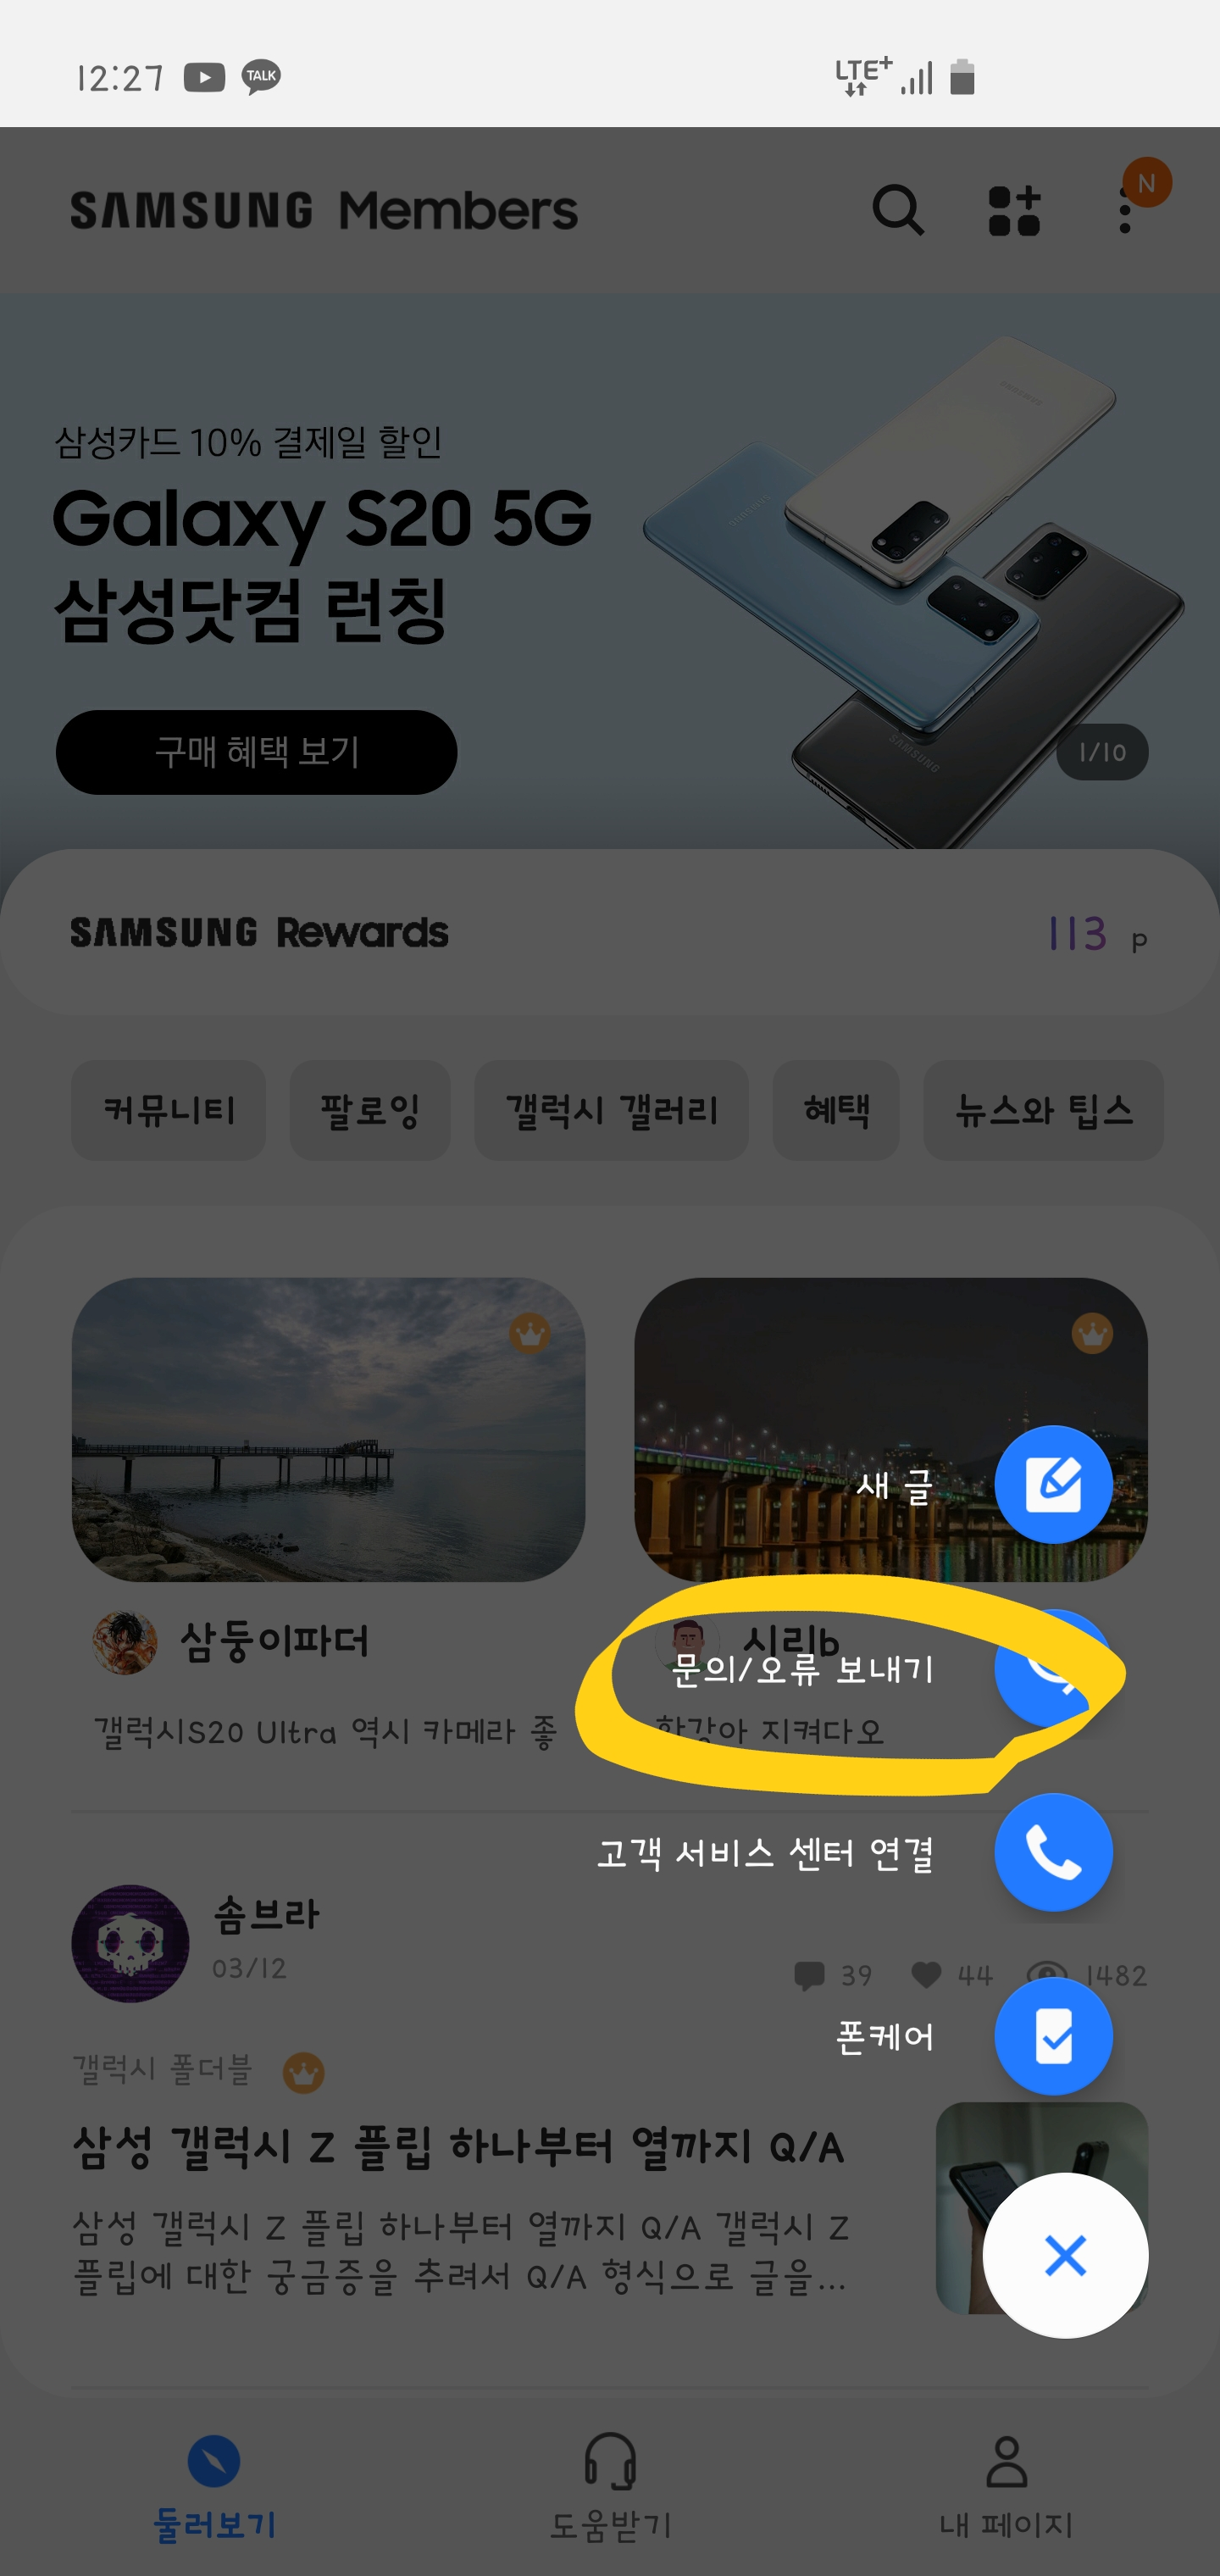 Screenshot_20200313-002725_Samsung Members.png